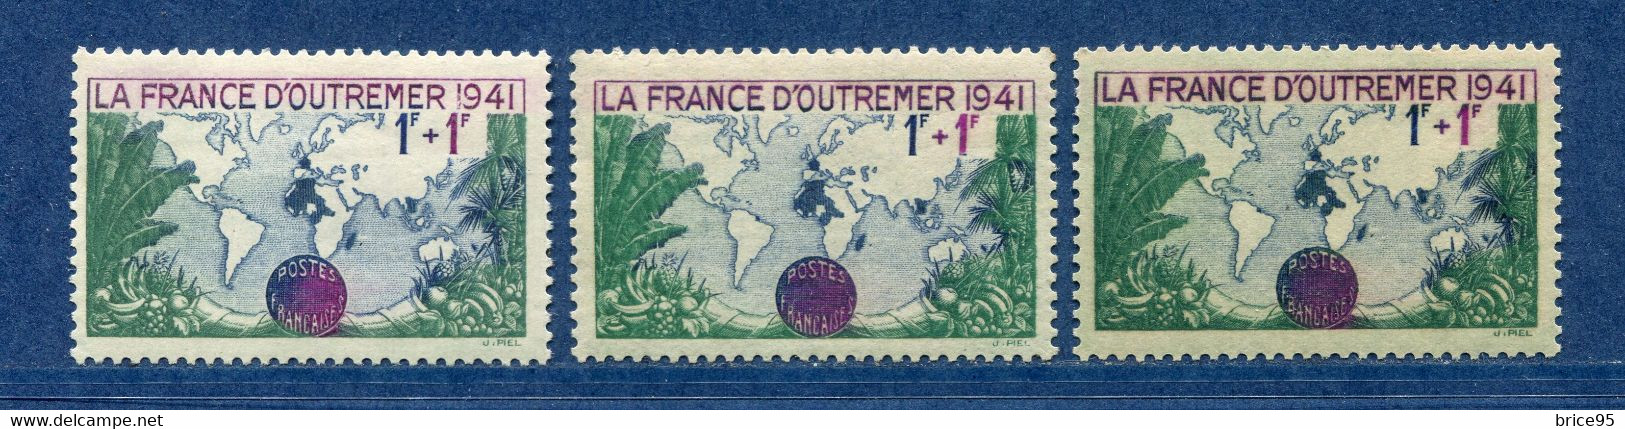 ⭐ France - Variété - YT N° 503 - Couleurs - Pétouille - Neuf Sans Charnière - 1941 ⭐ - Nuovi